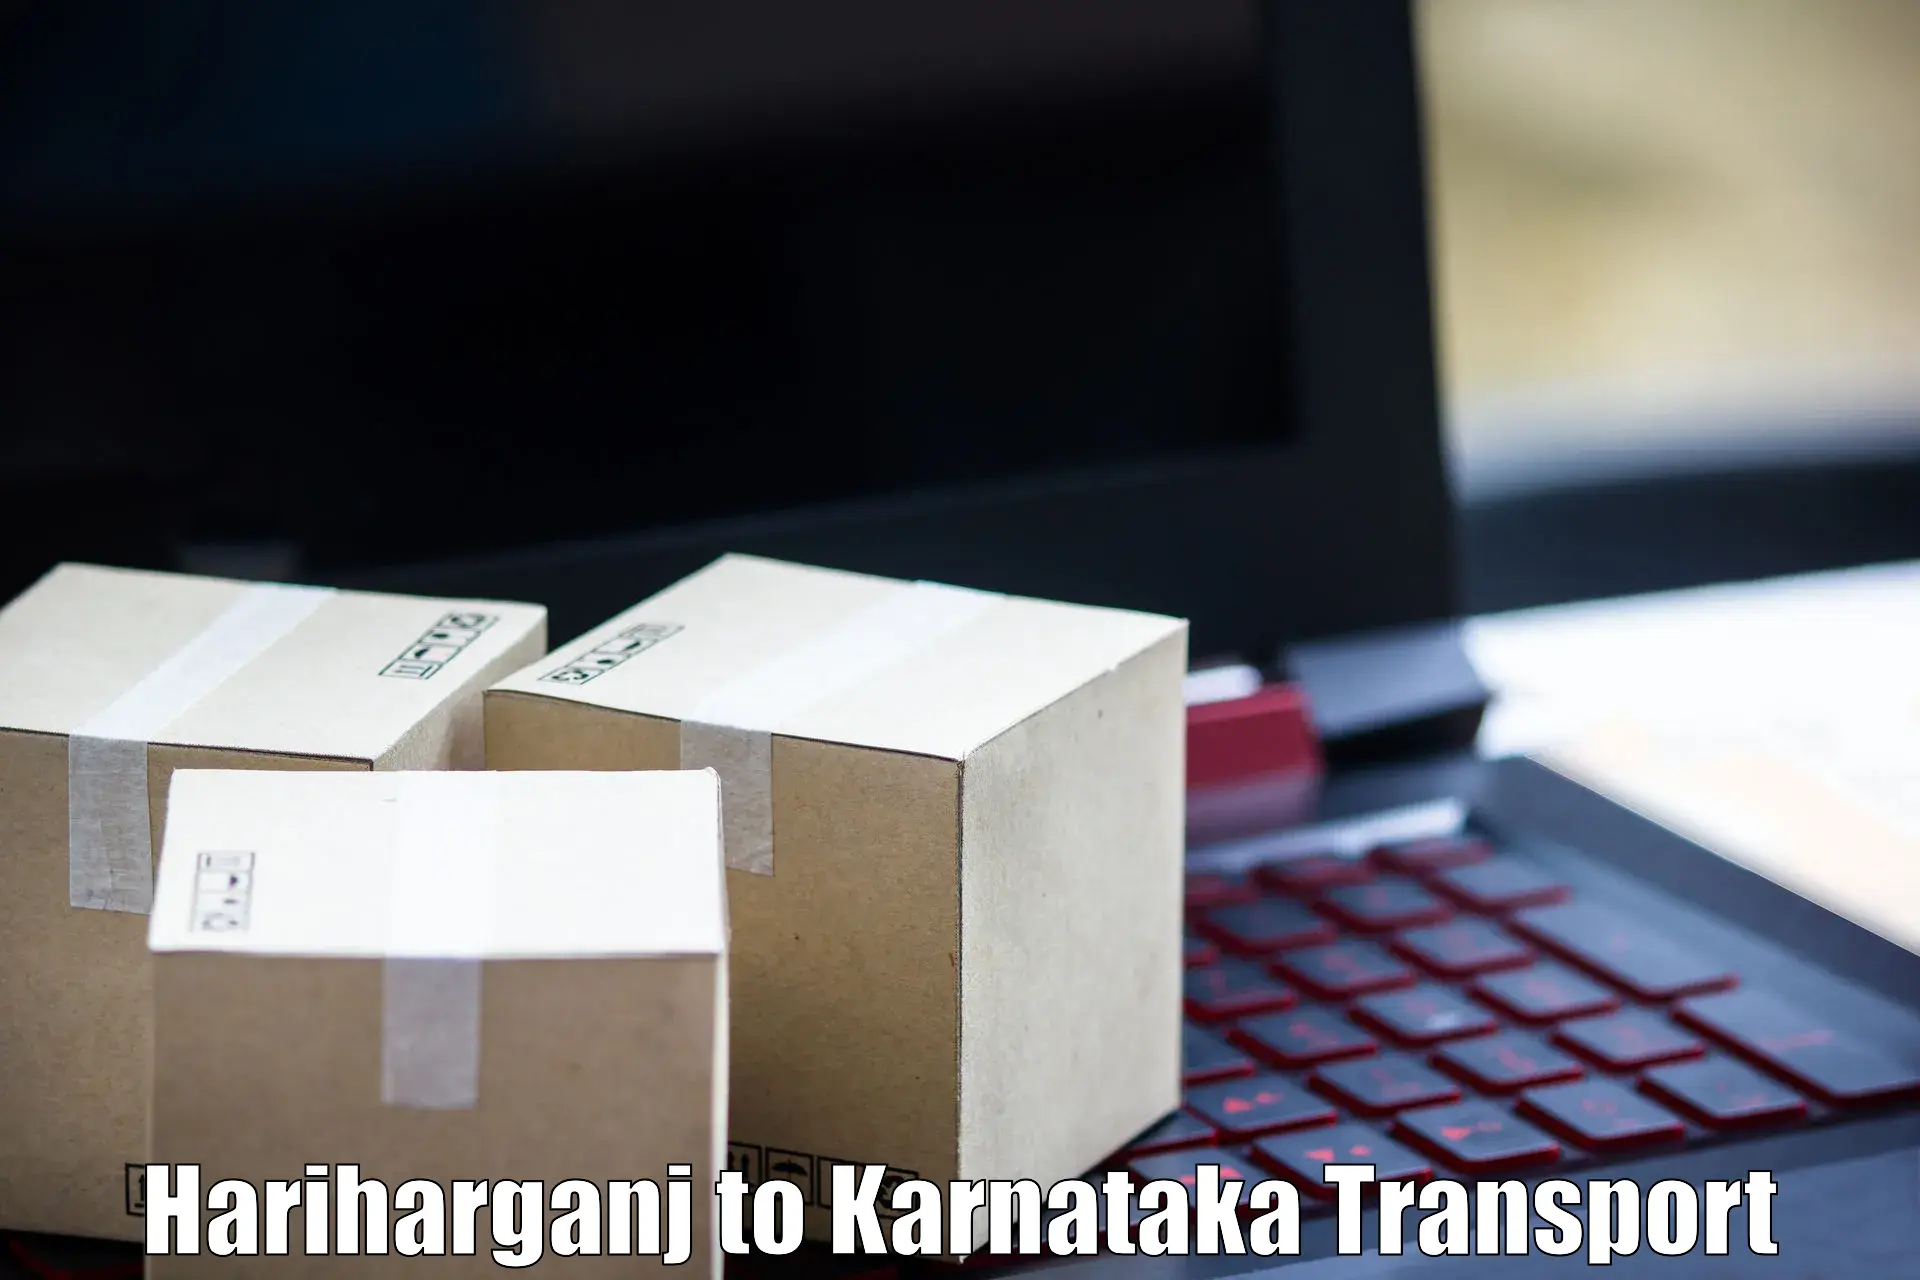 Express transport services Hariharganj to Chamarajanagar